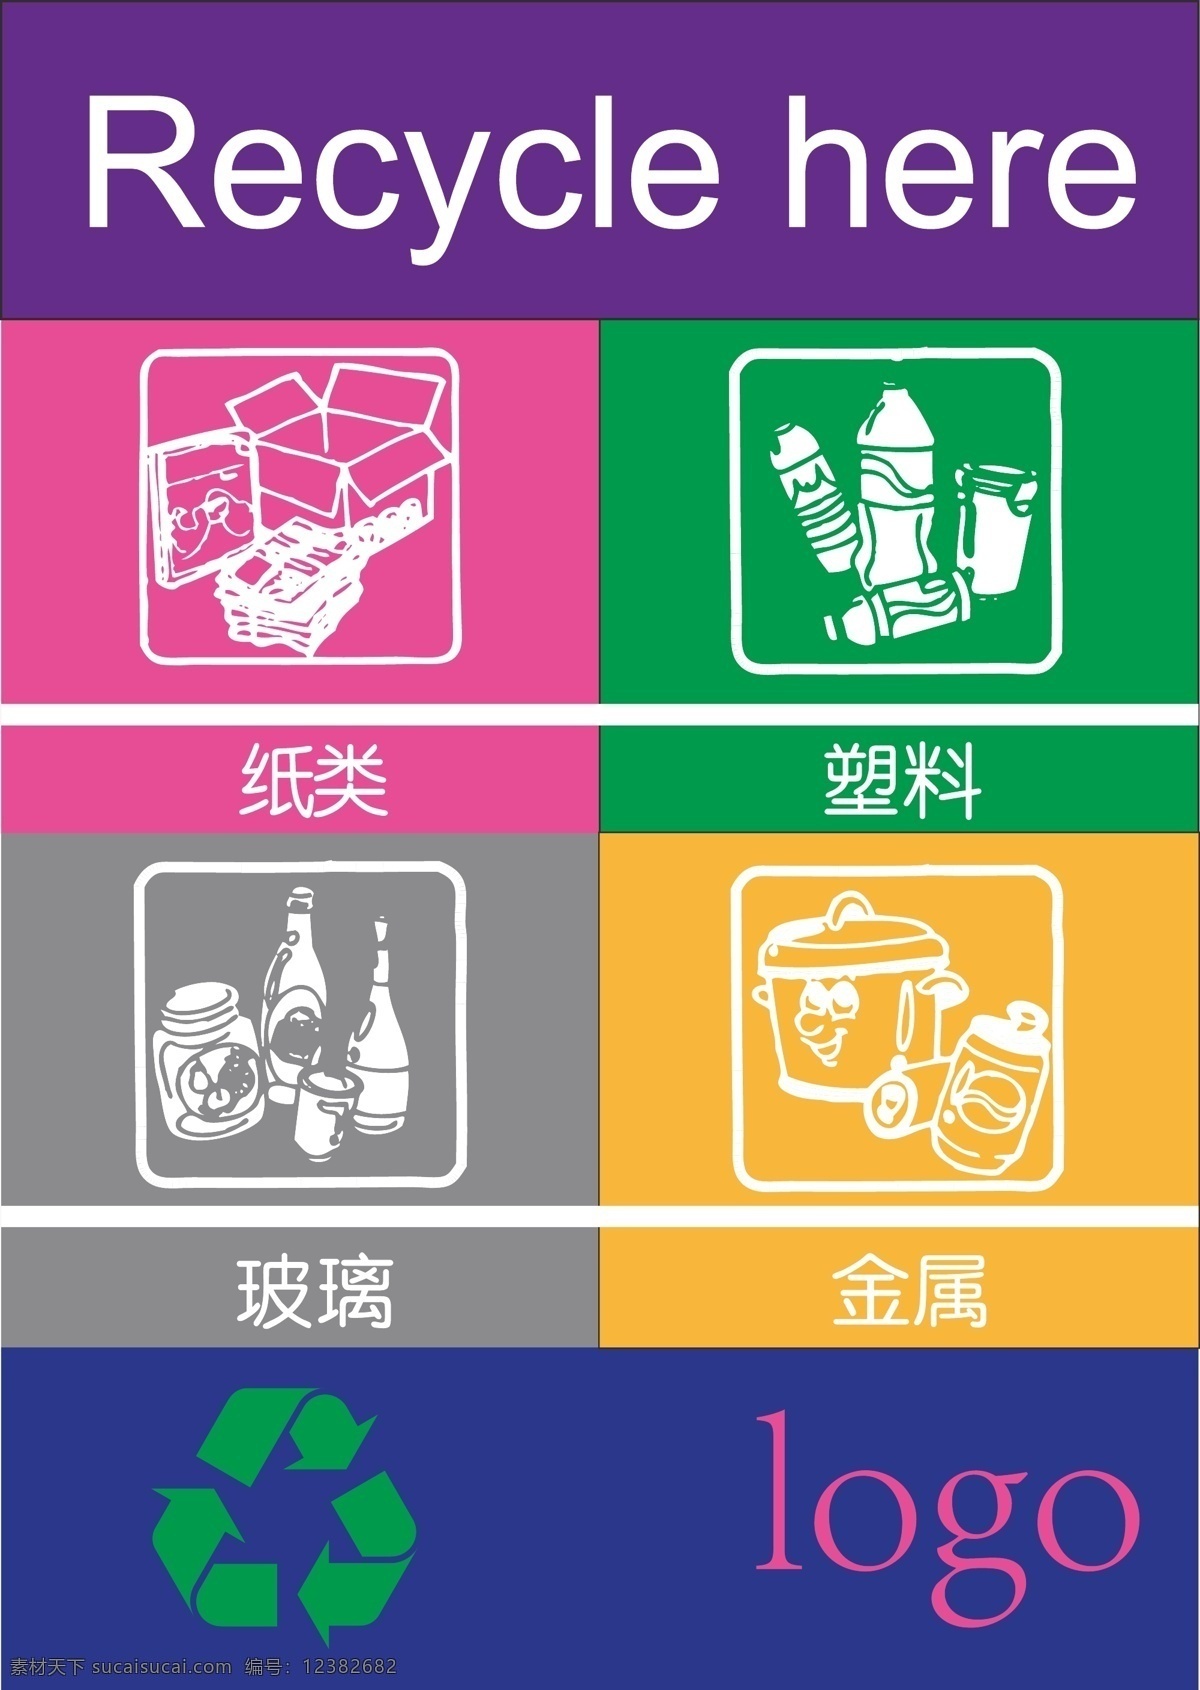 垃圾回收分类 商场 垃圾 分类 可回收 金属 玻璃 纸类 标志图标 公共标识标志